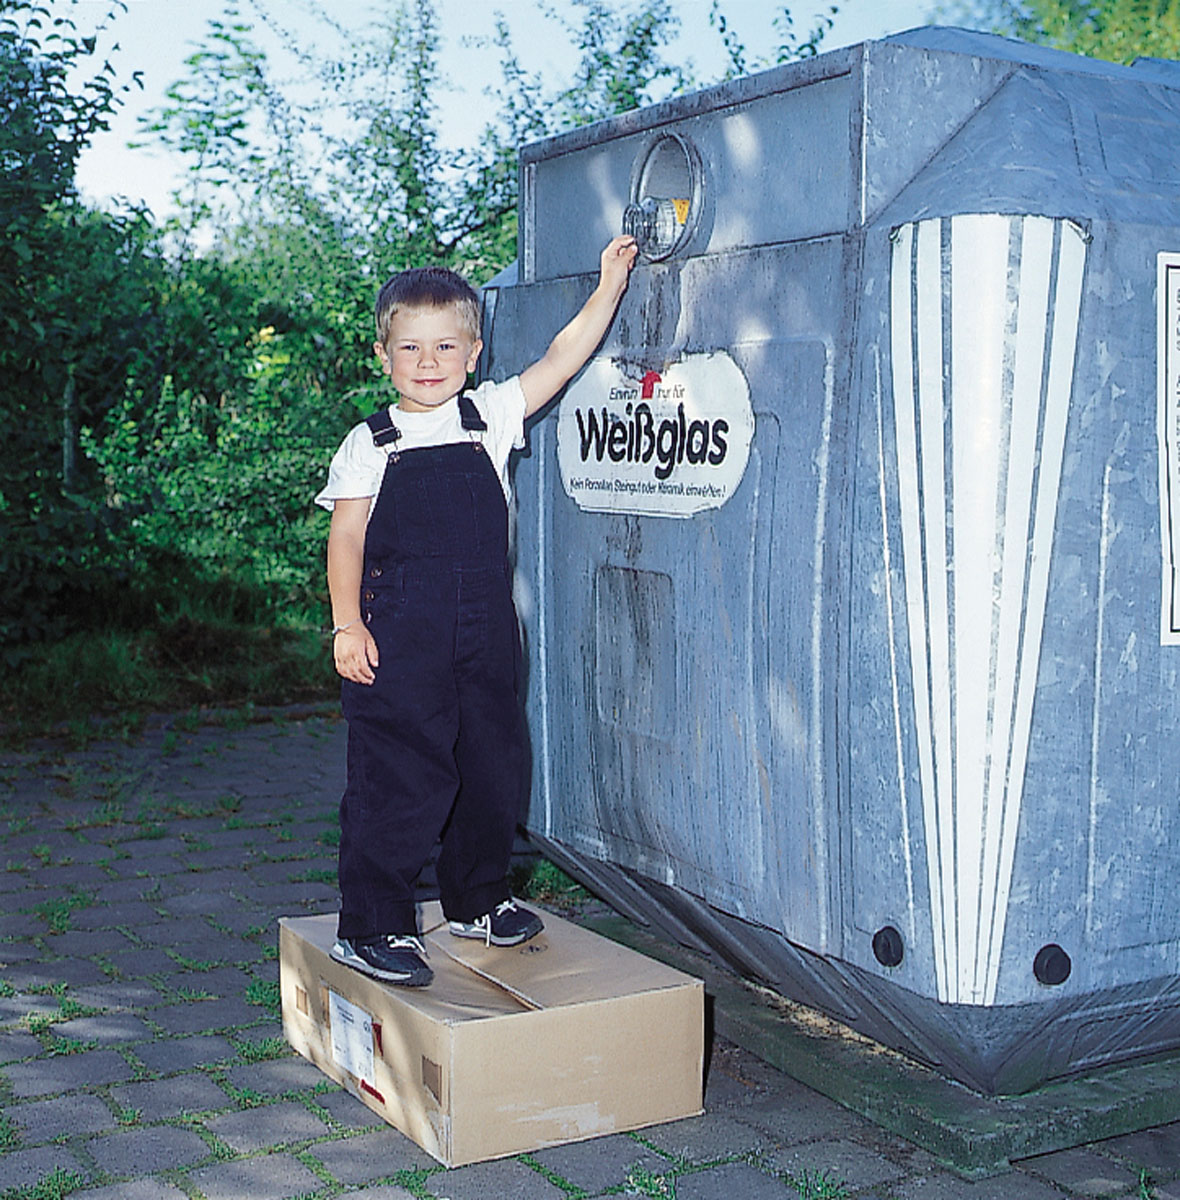 Am Containerstandort: Junge wirft Gurkenglas in den Weißglascontainer